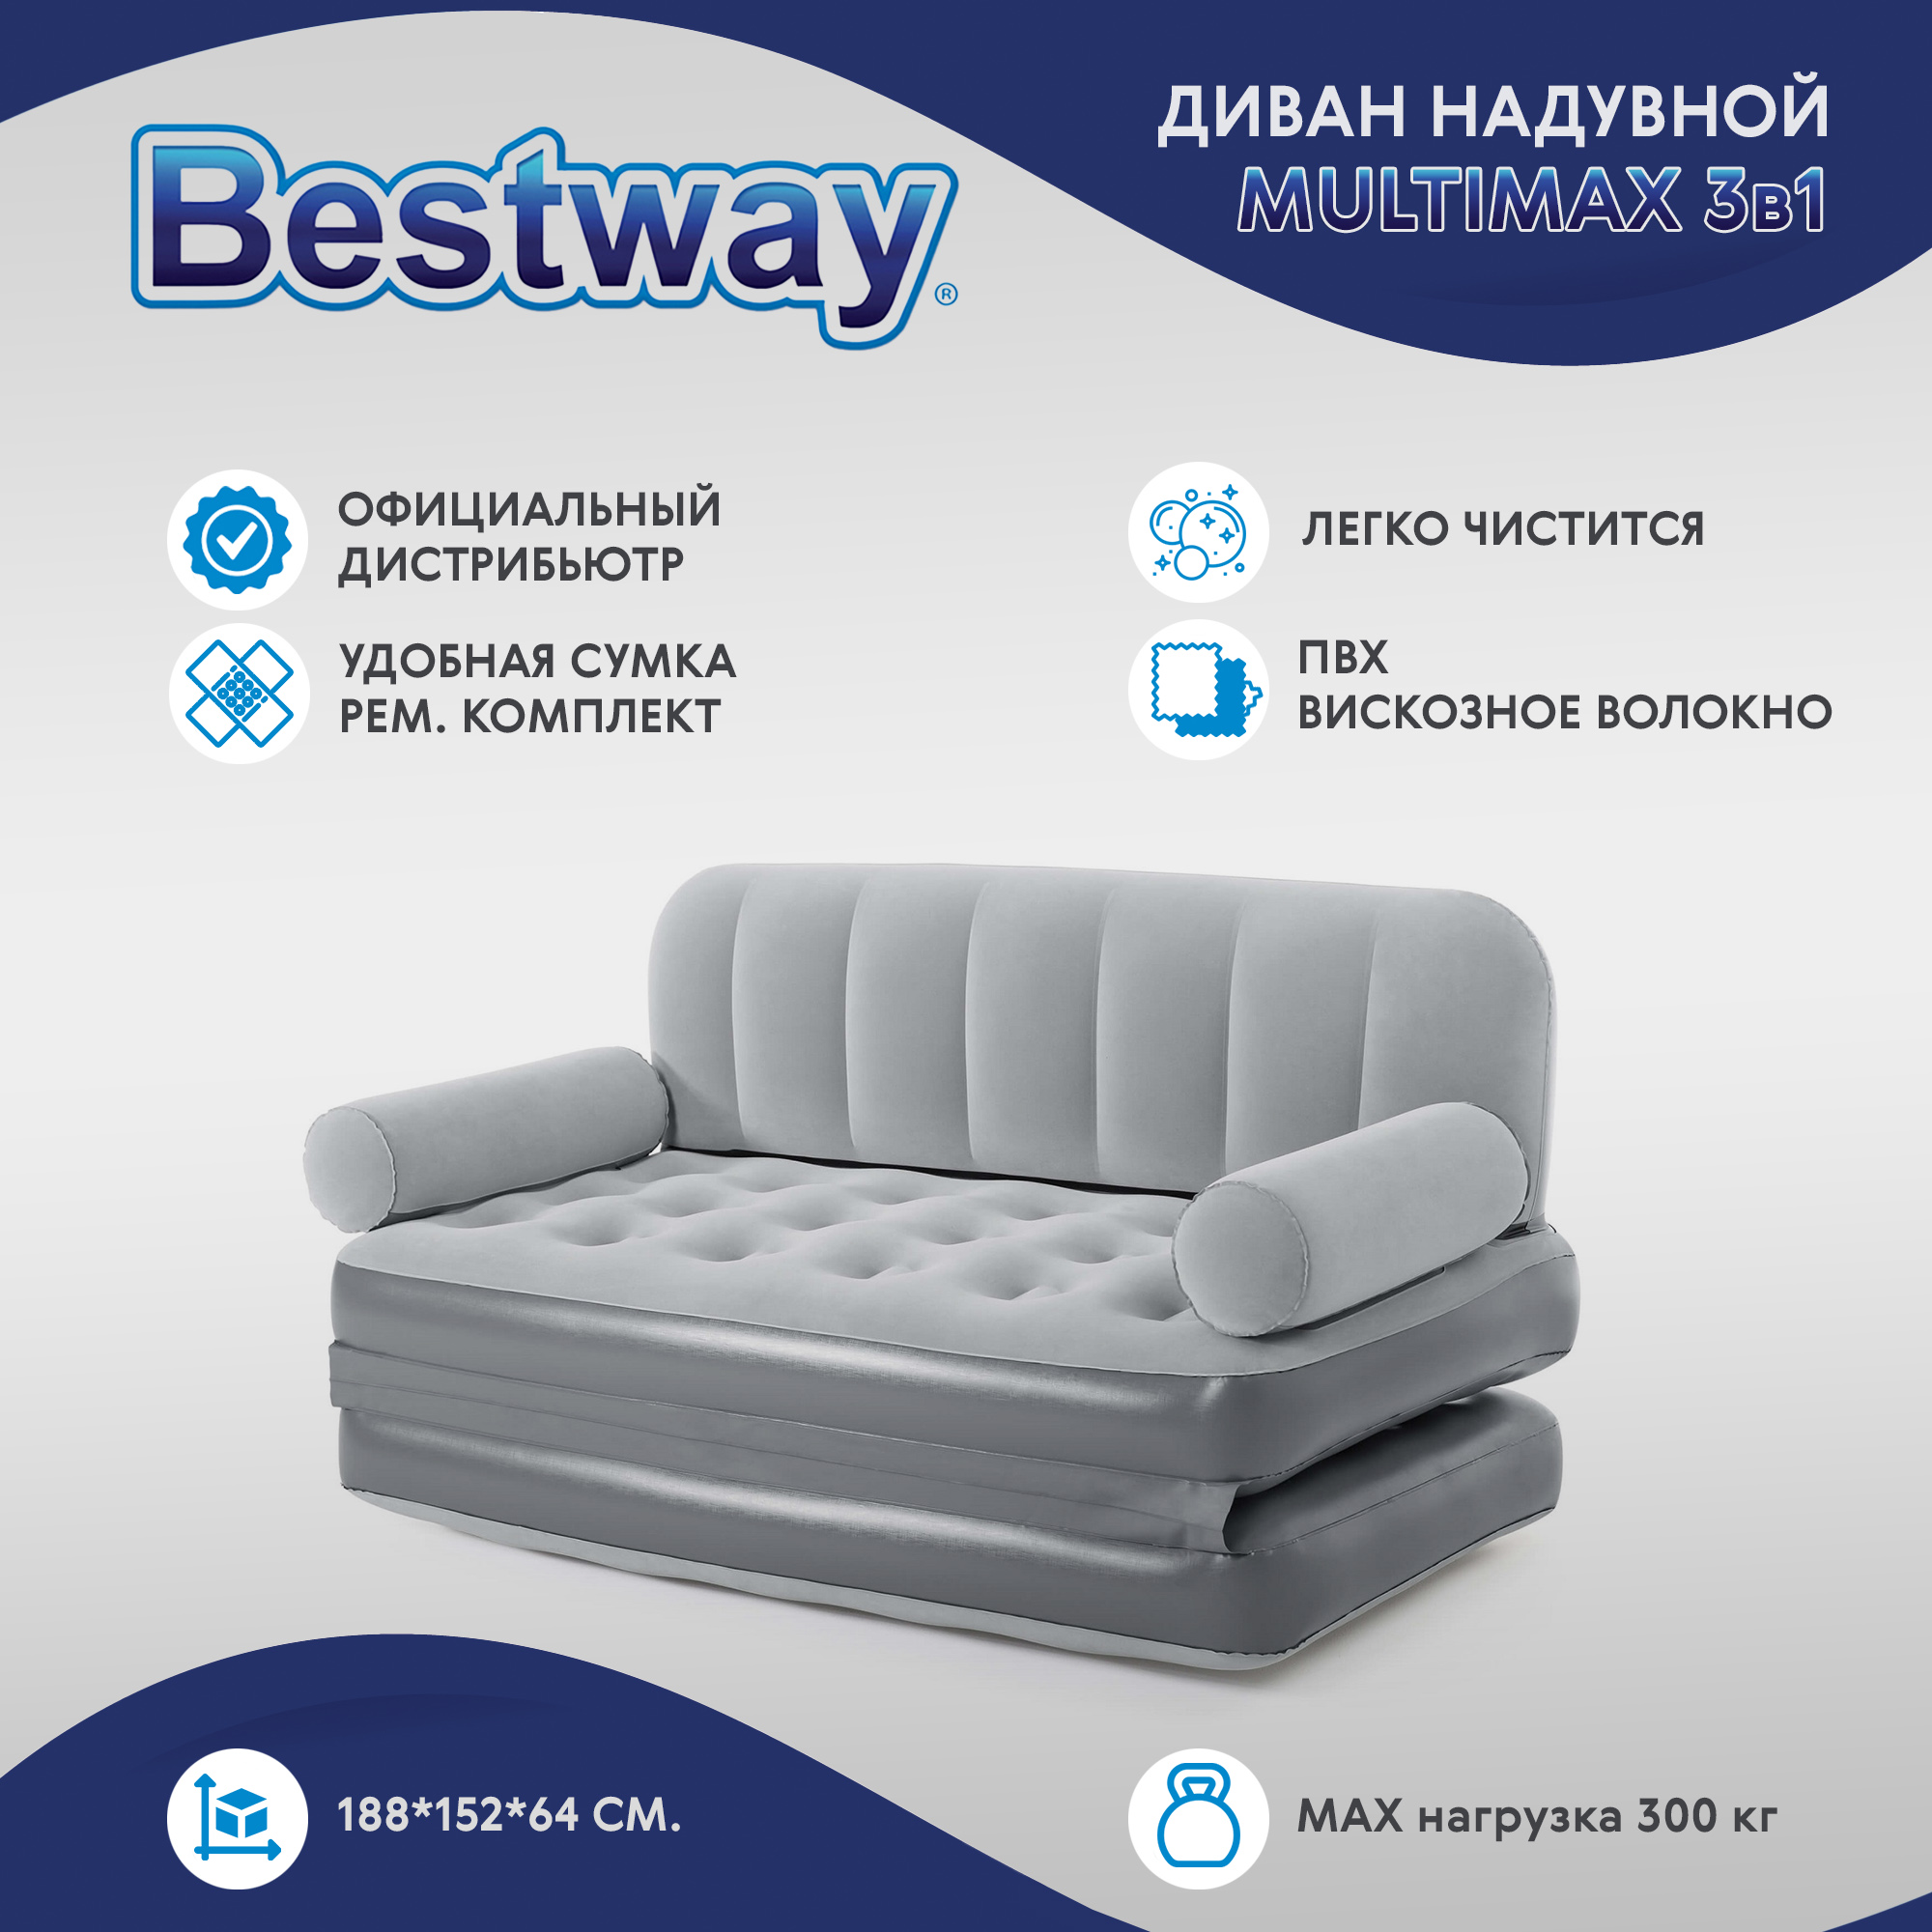 Диван надувной Bestway multimax 3в1 188x152x64 см (75079), цвет серый - фото 2